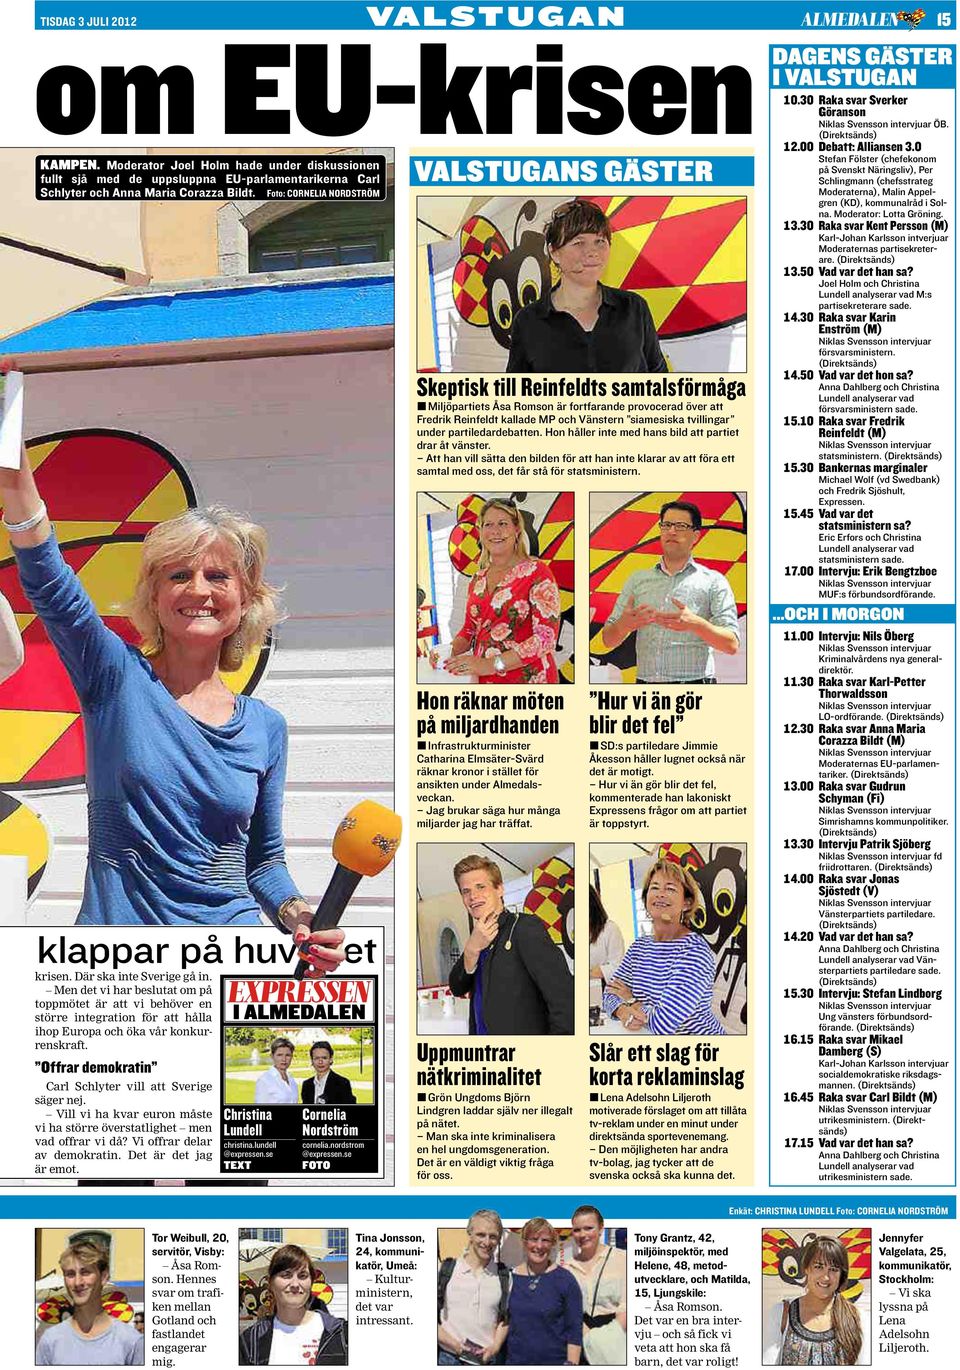 Foto: cornelia nordström klappar på huvudet krisen. Där ska inte Sverige gå in.